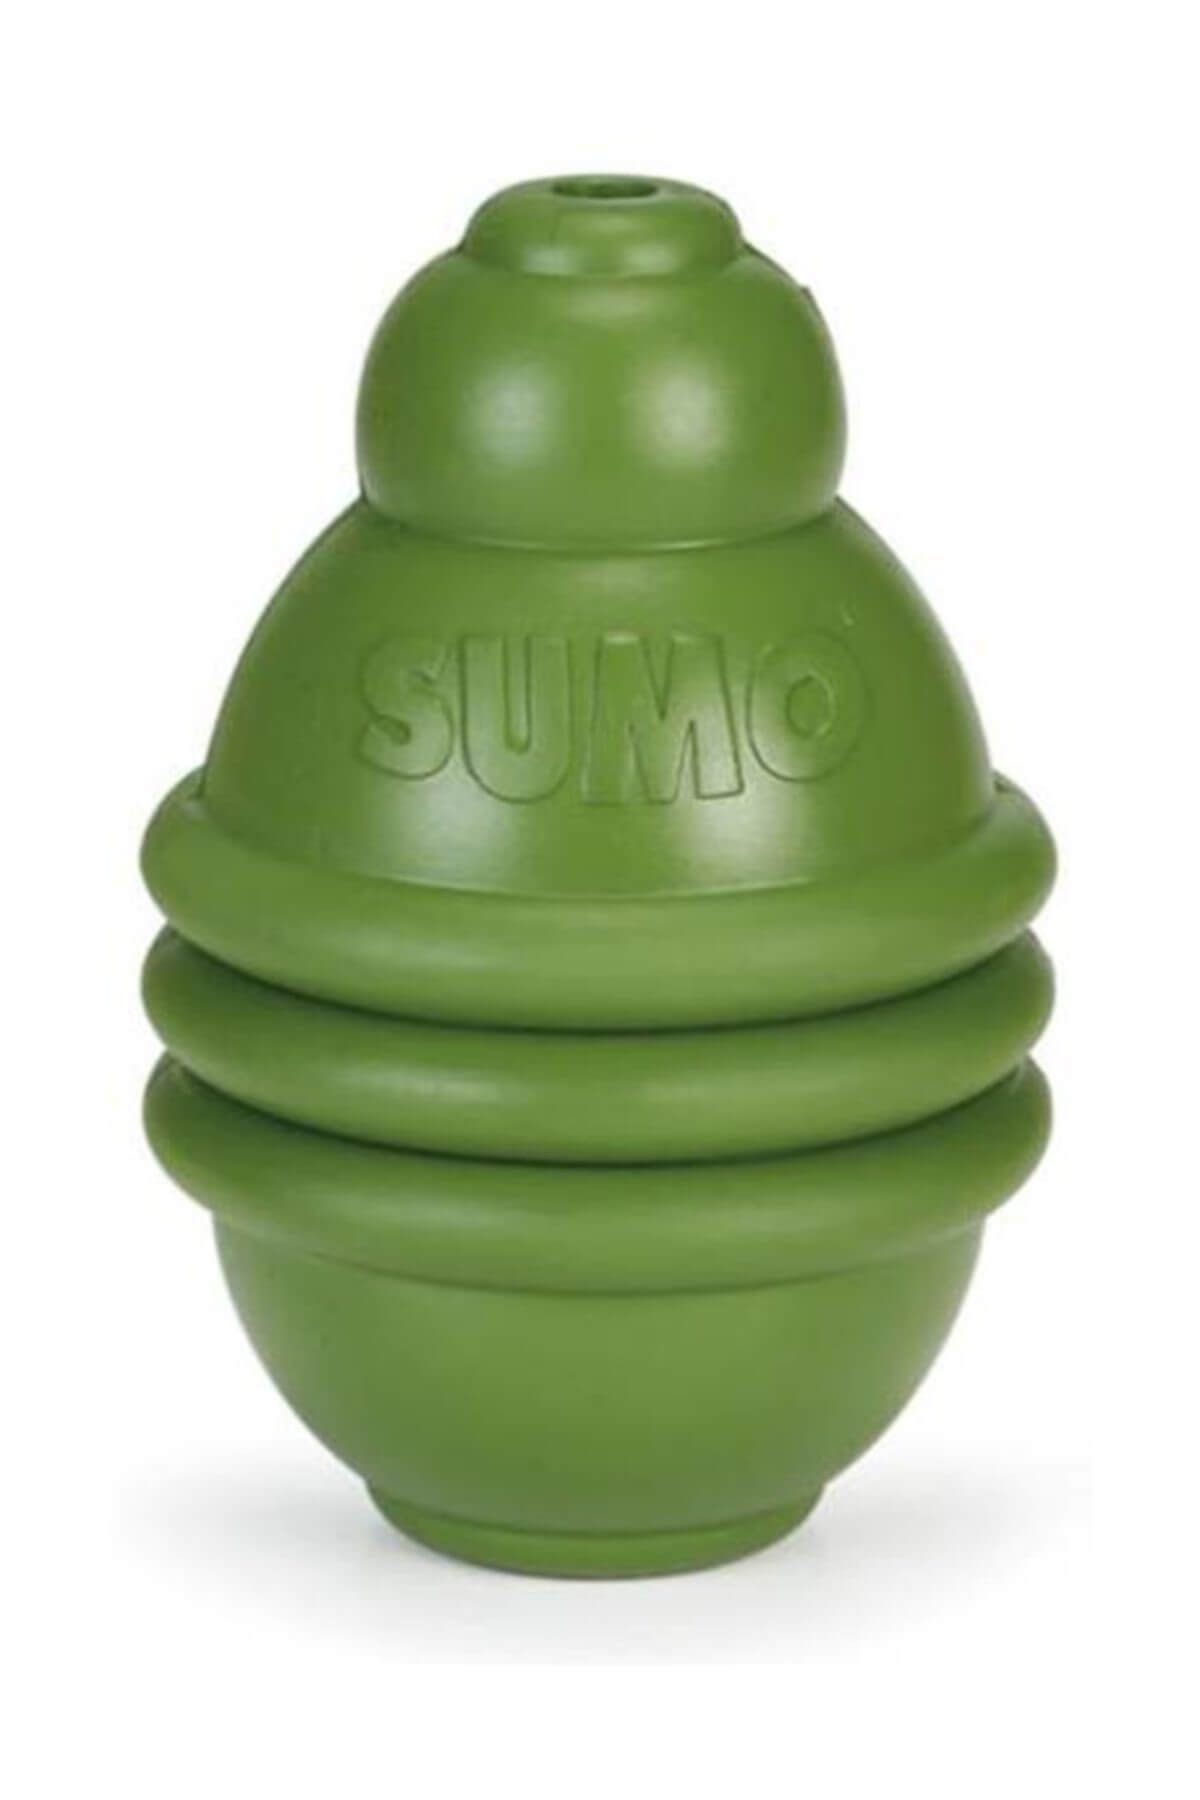 Beeztees Sumo Köpek Oyuncağı Yeşil Large 15 Cm